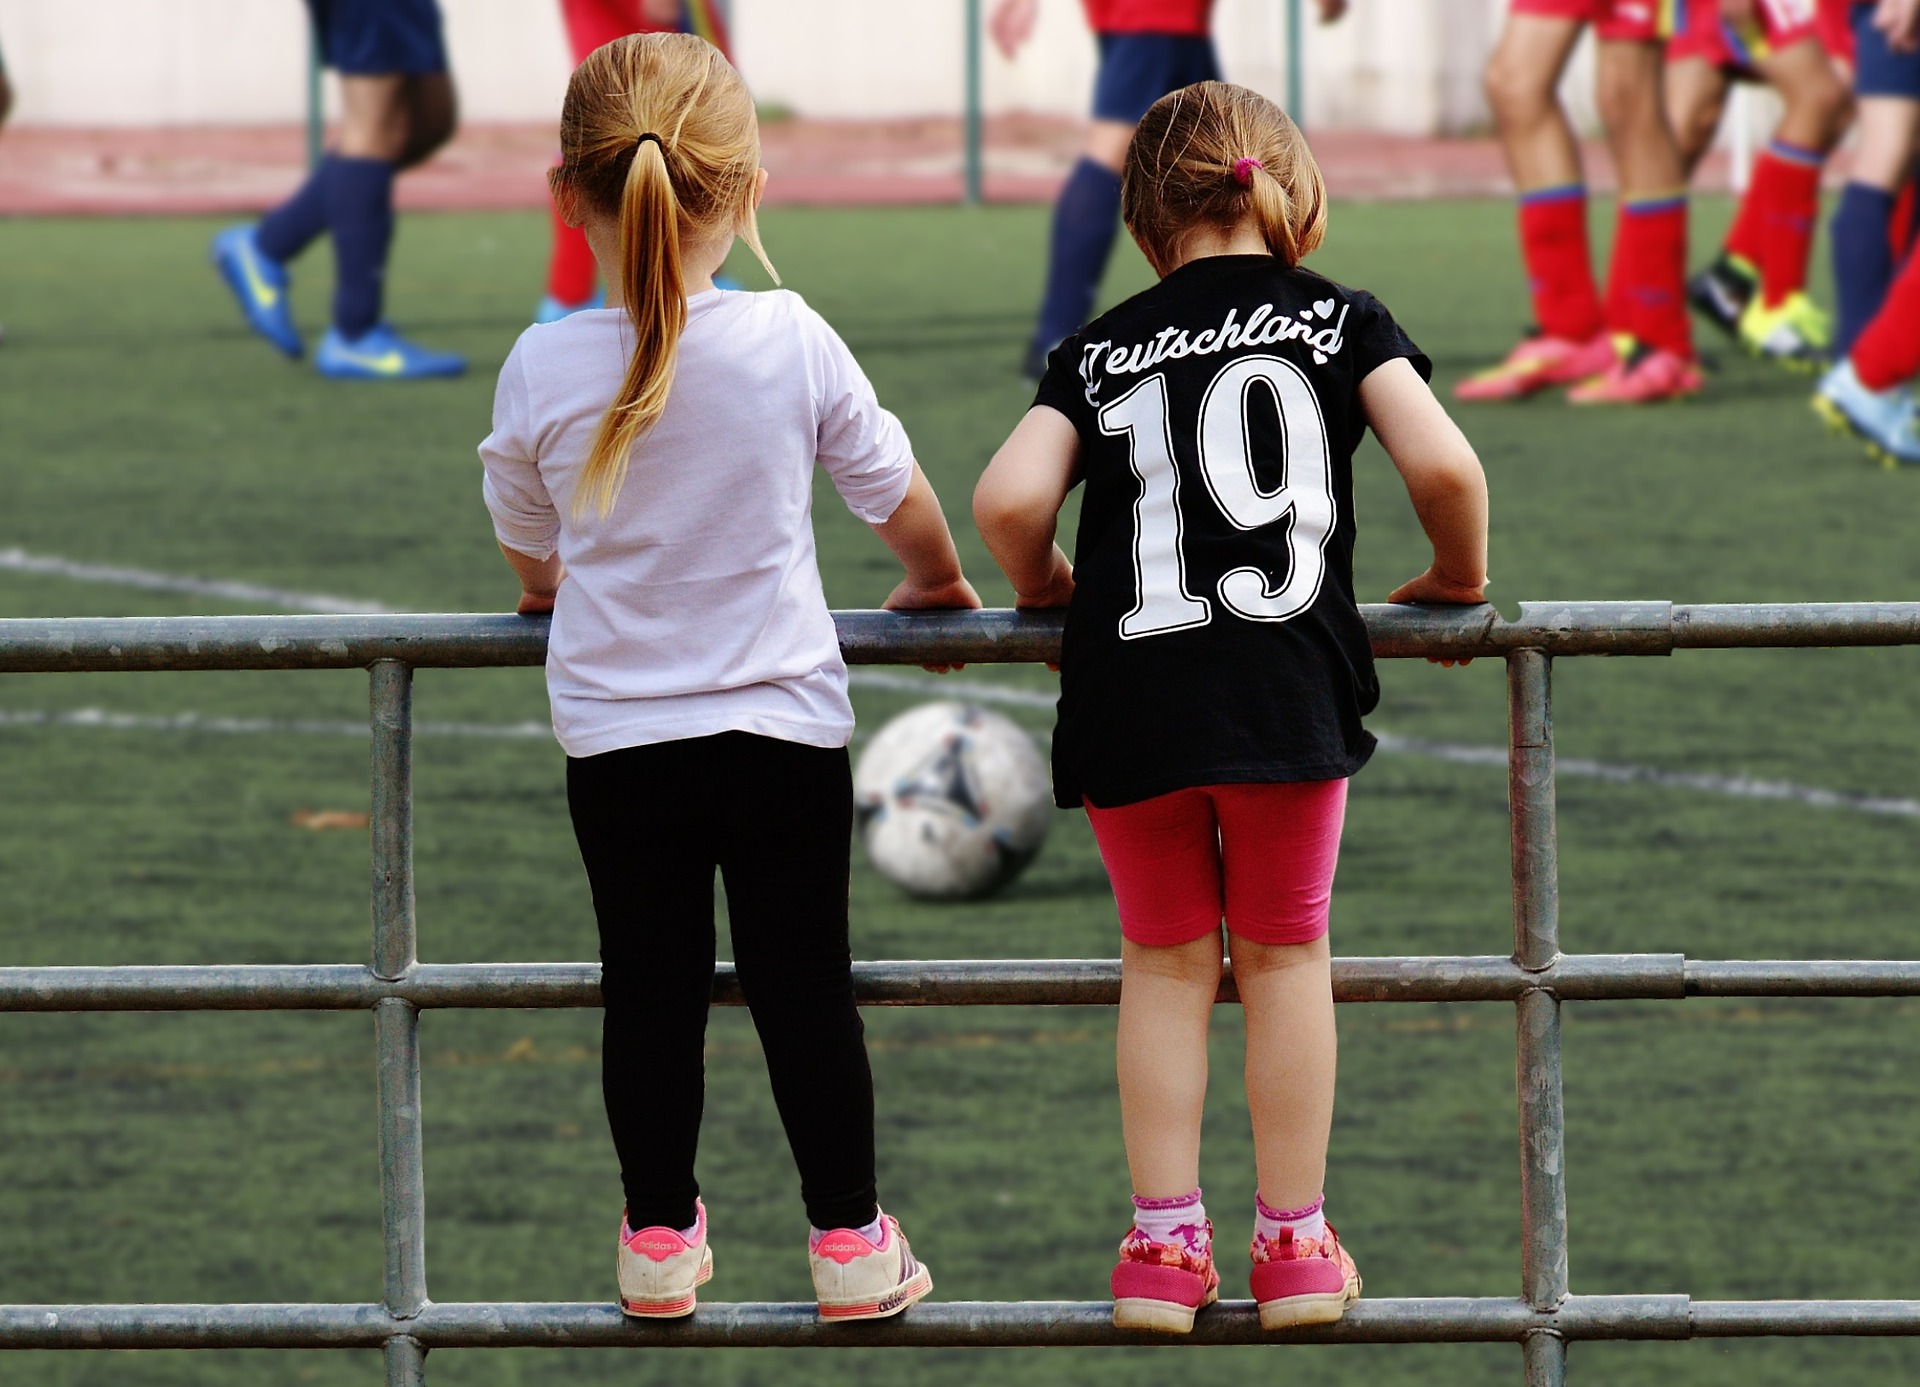 Na imagem, duas meninas aparecem de costas para a câmera, penduradas na grade do campo e olhando em direção à bola e aos jogadores